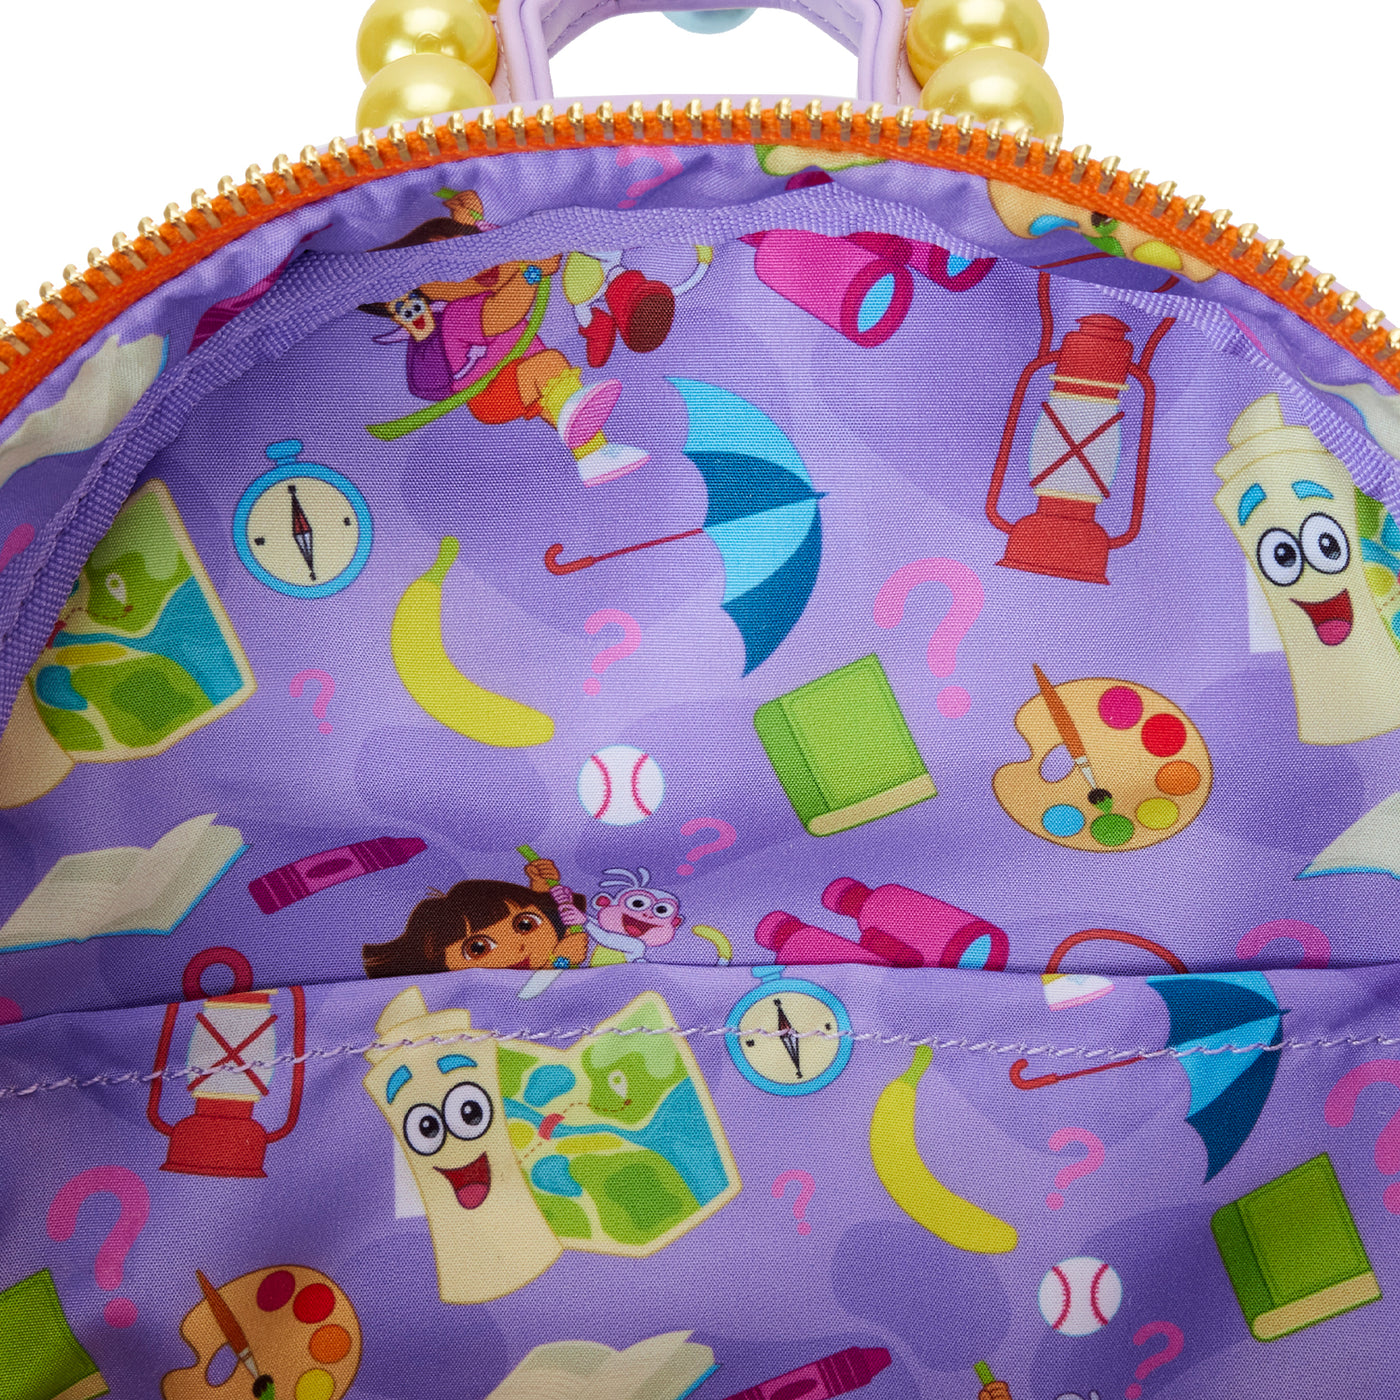 Loungefly Nickelodeon Dora Backpack Cosplay Mini Backpack